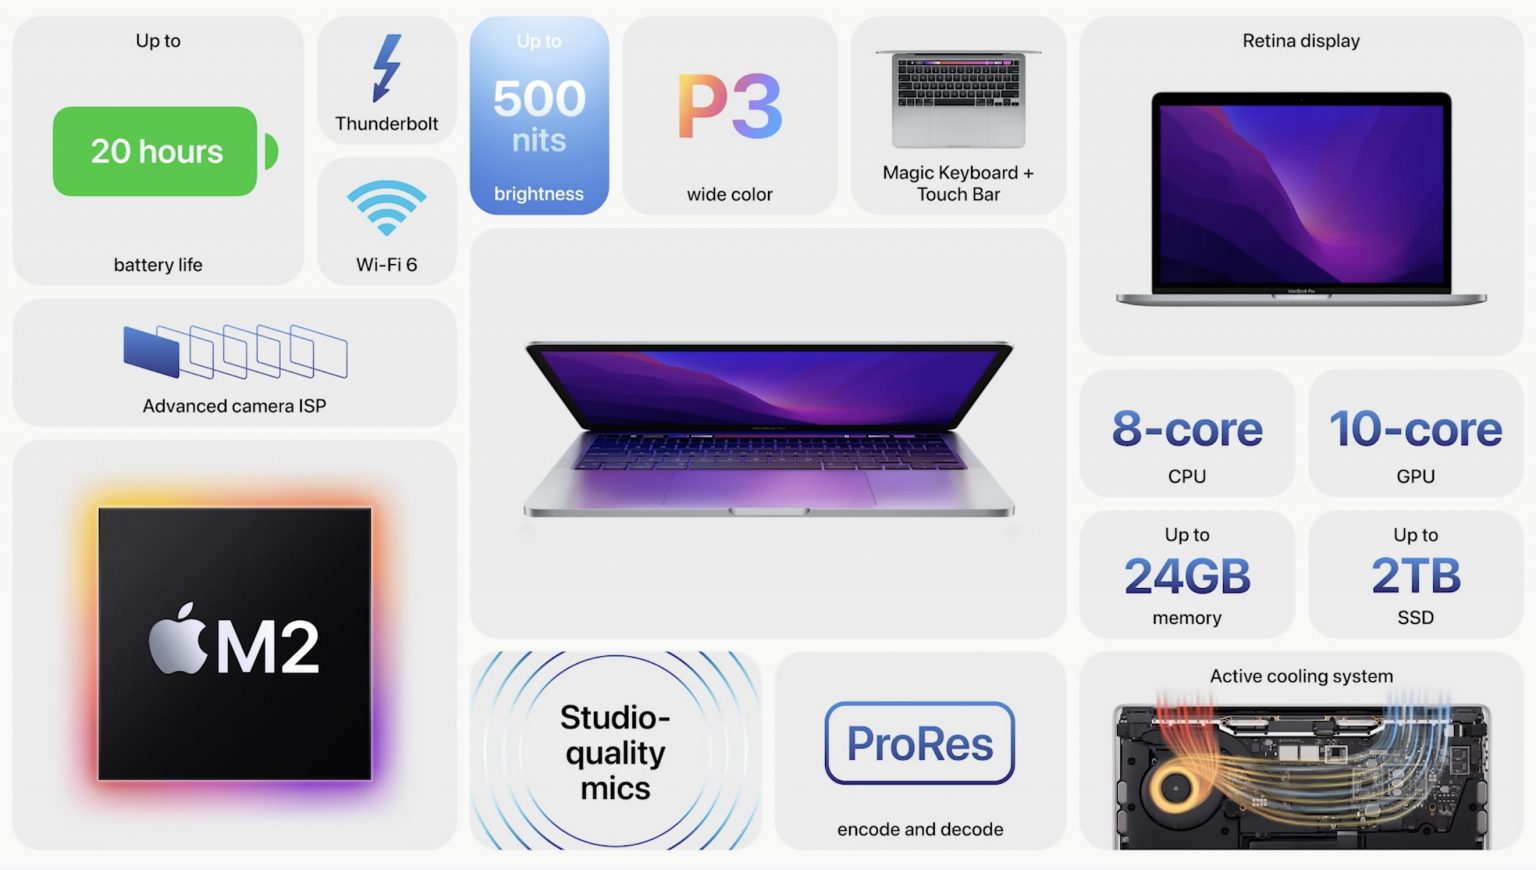 MacBook mới sử dụng chip Apple M2 sẽ sớm về Việt Nam có giá bao nhiêu? - Apple MacBook Pro Features 1536x870 1